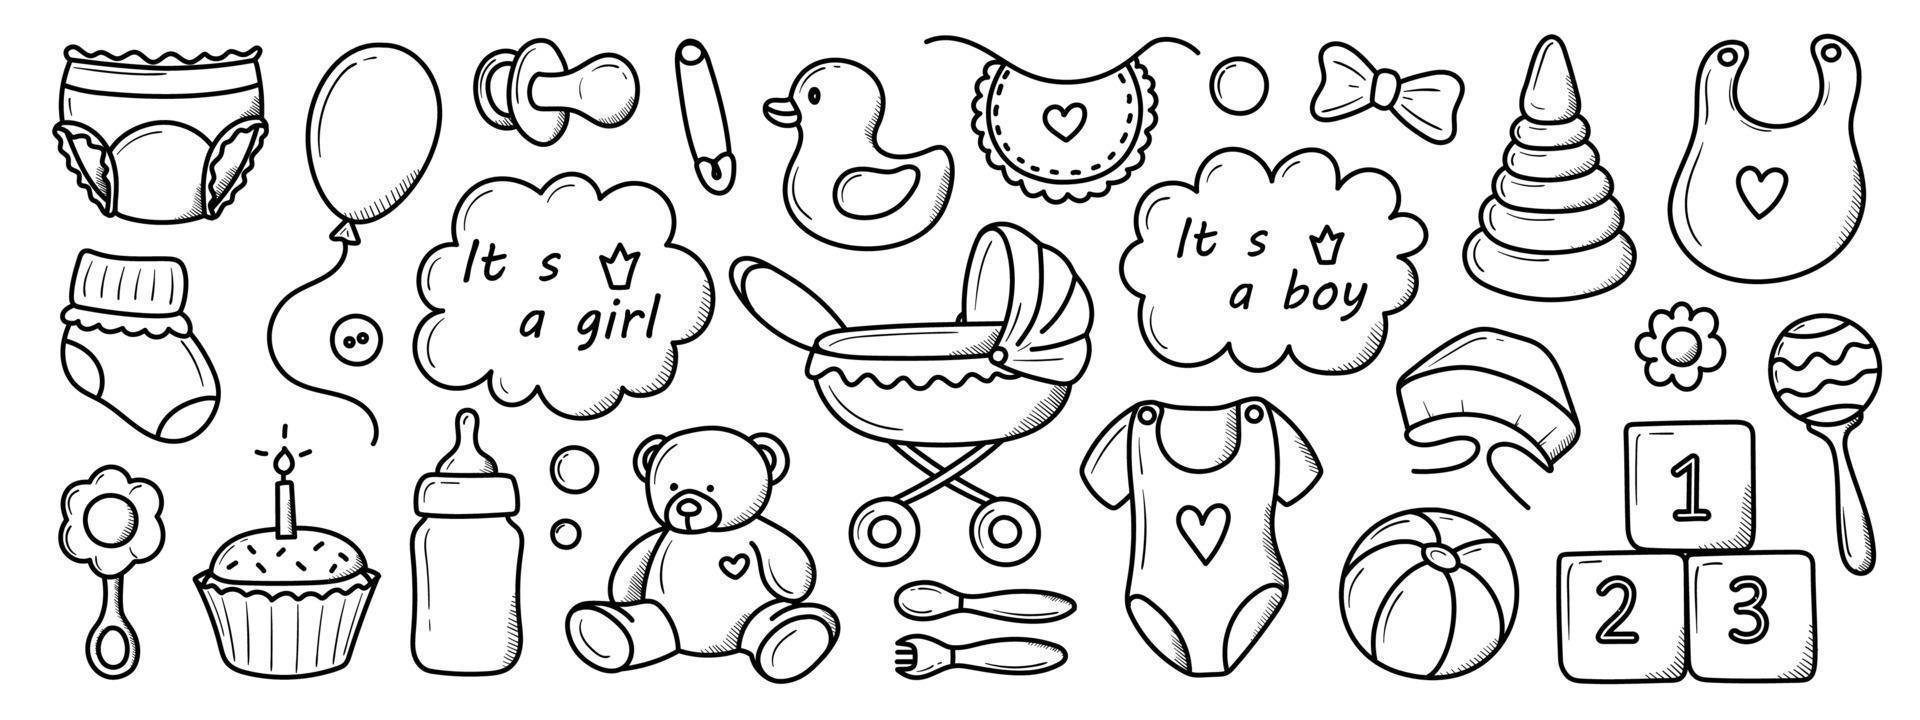 um conjunto de elementos de crianças nascidas desenhadas à mão em estilo doodle vetor